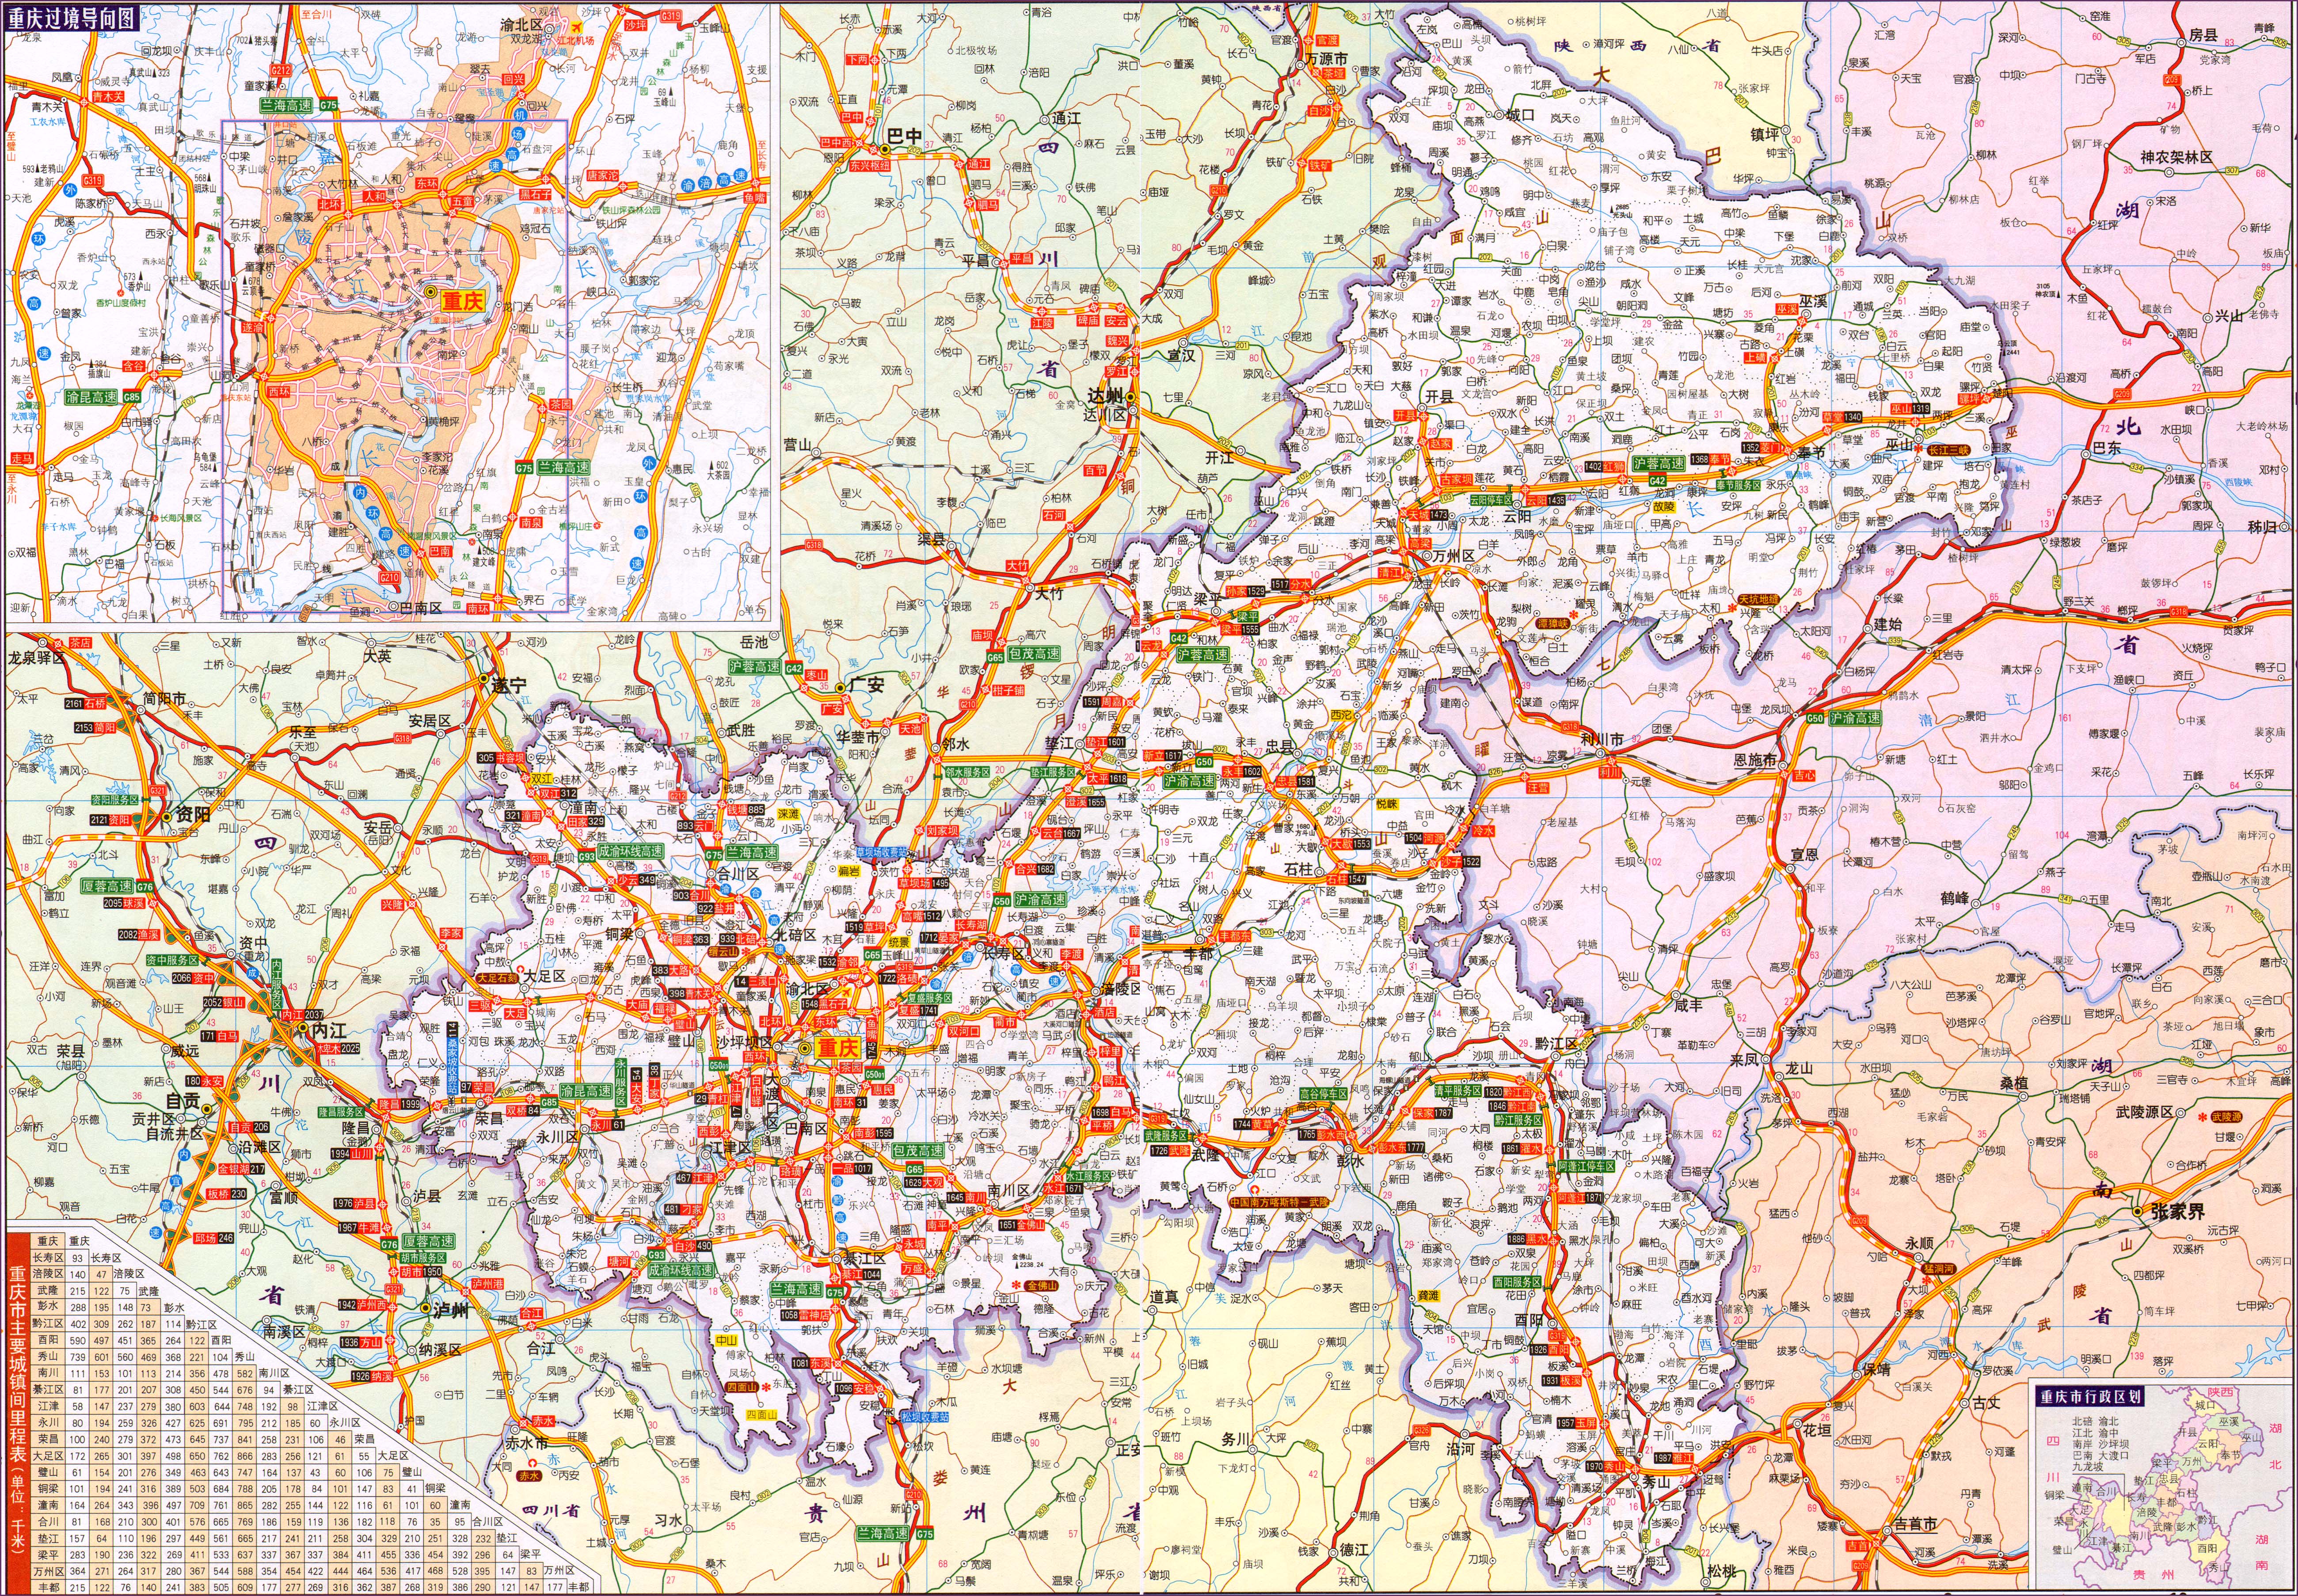 重庆市铁路版式标准地图 - 重庆市地图 - 地理教师网